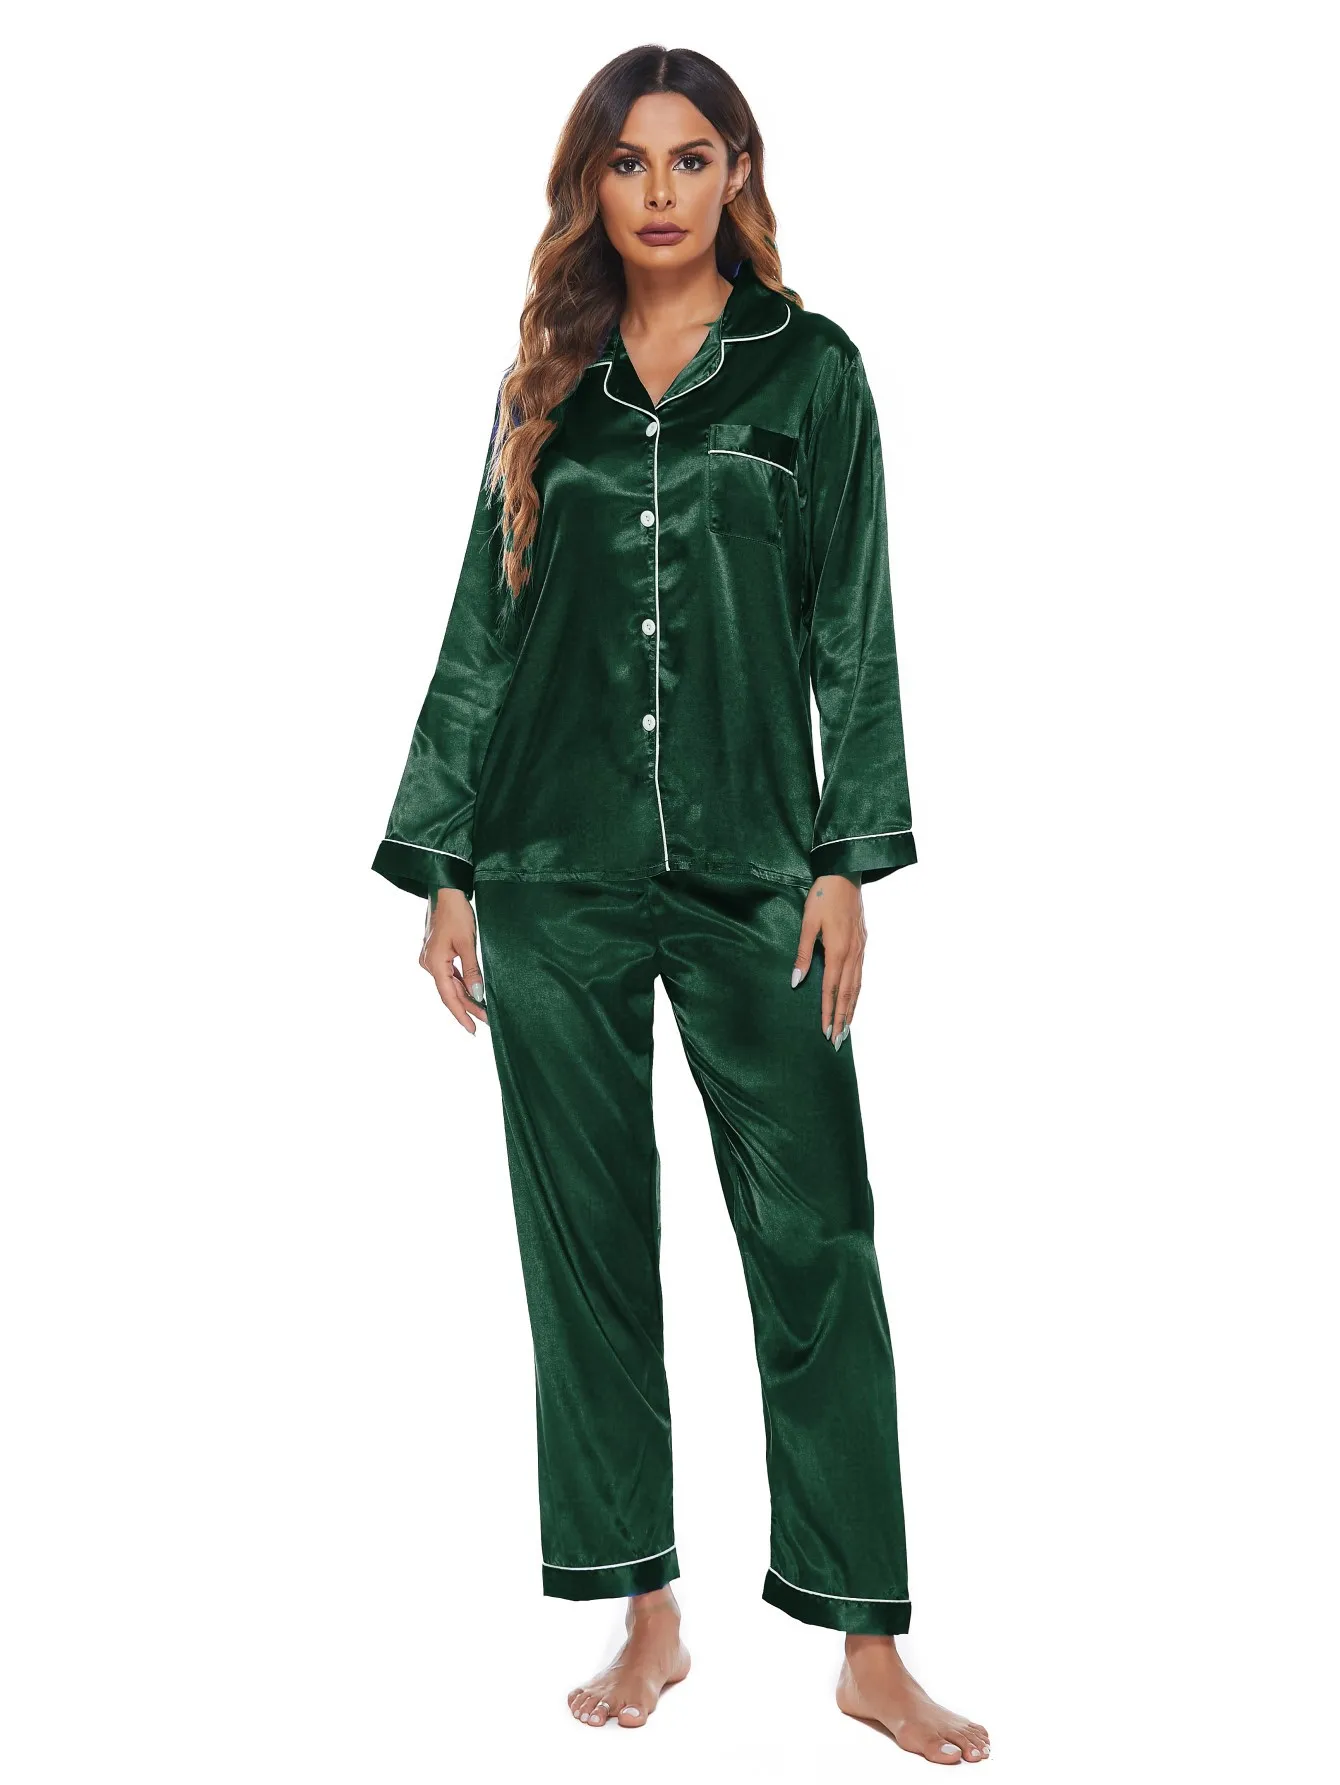 Simple Design Satin Pajama Set Women Fast Shipping Long Nightwear Satin ...